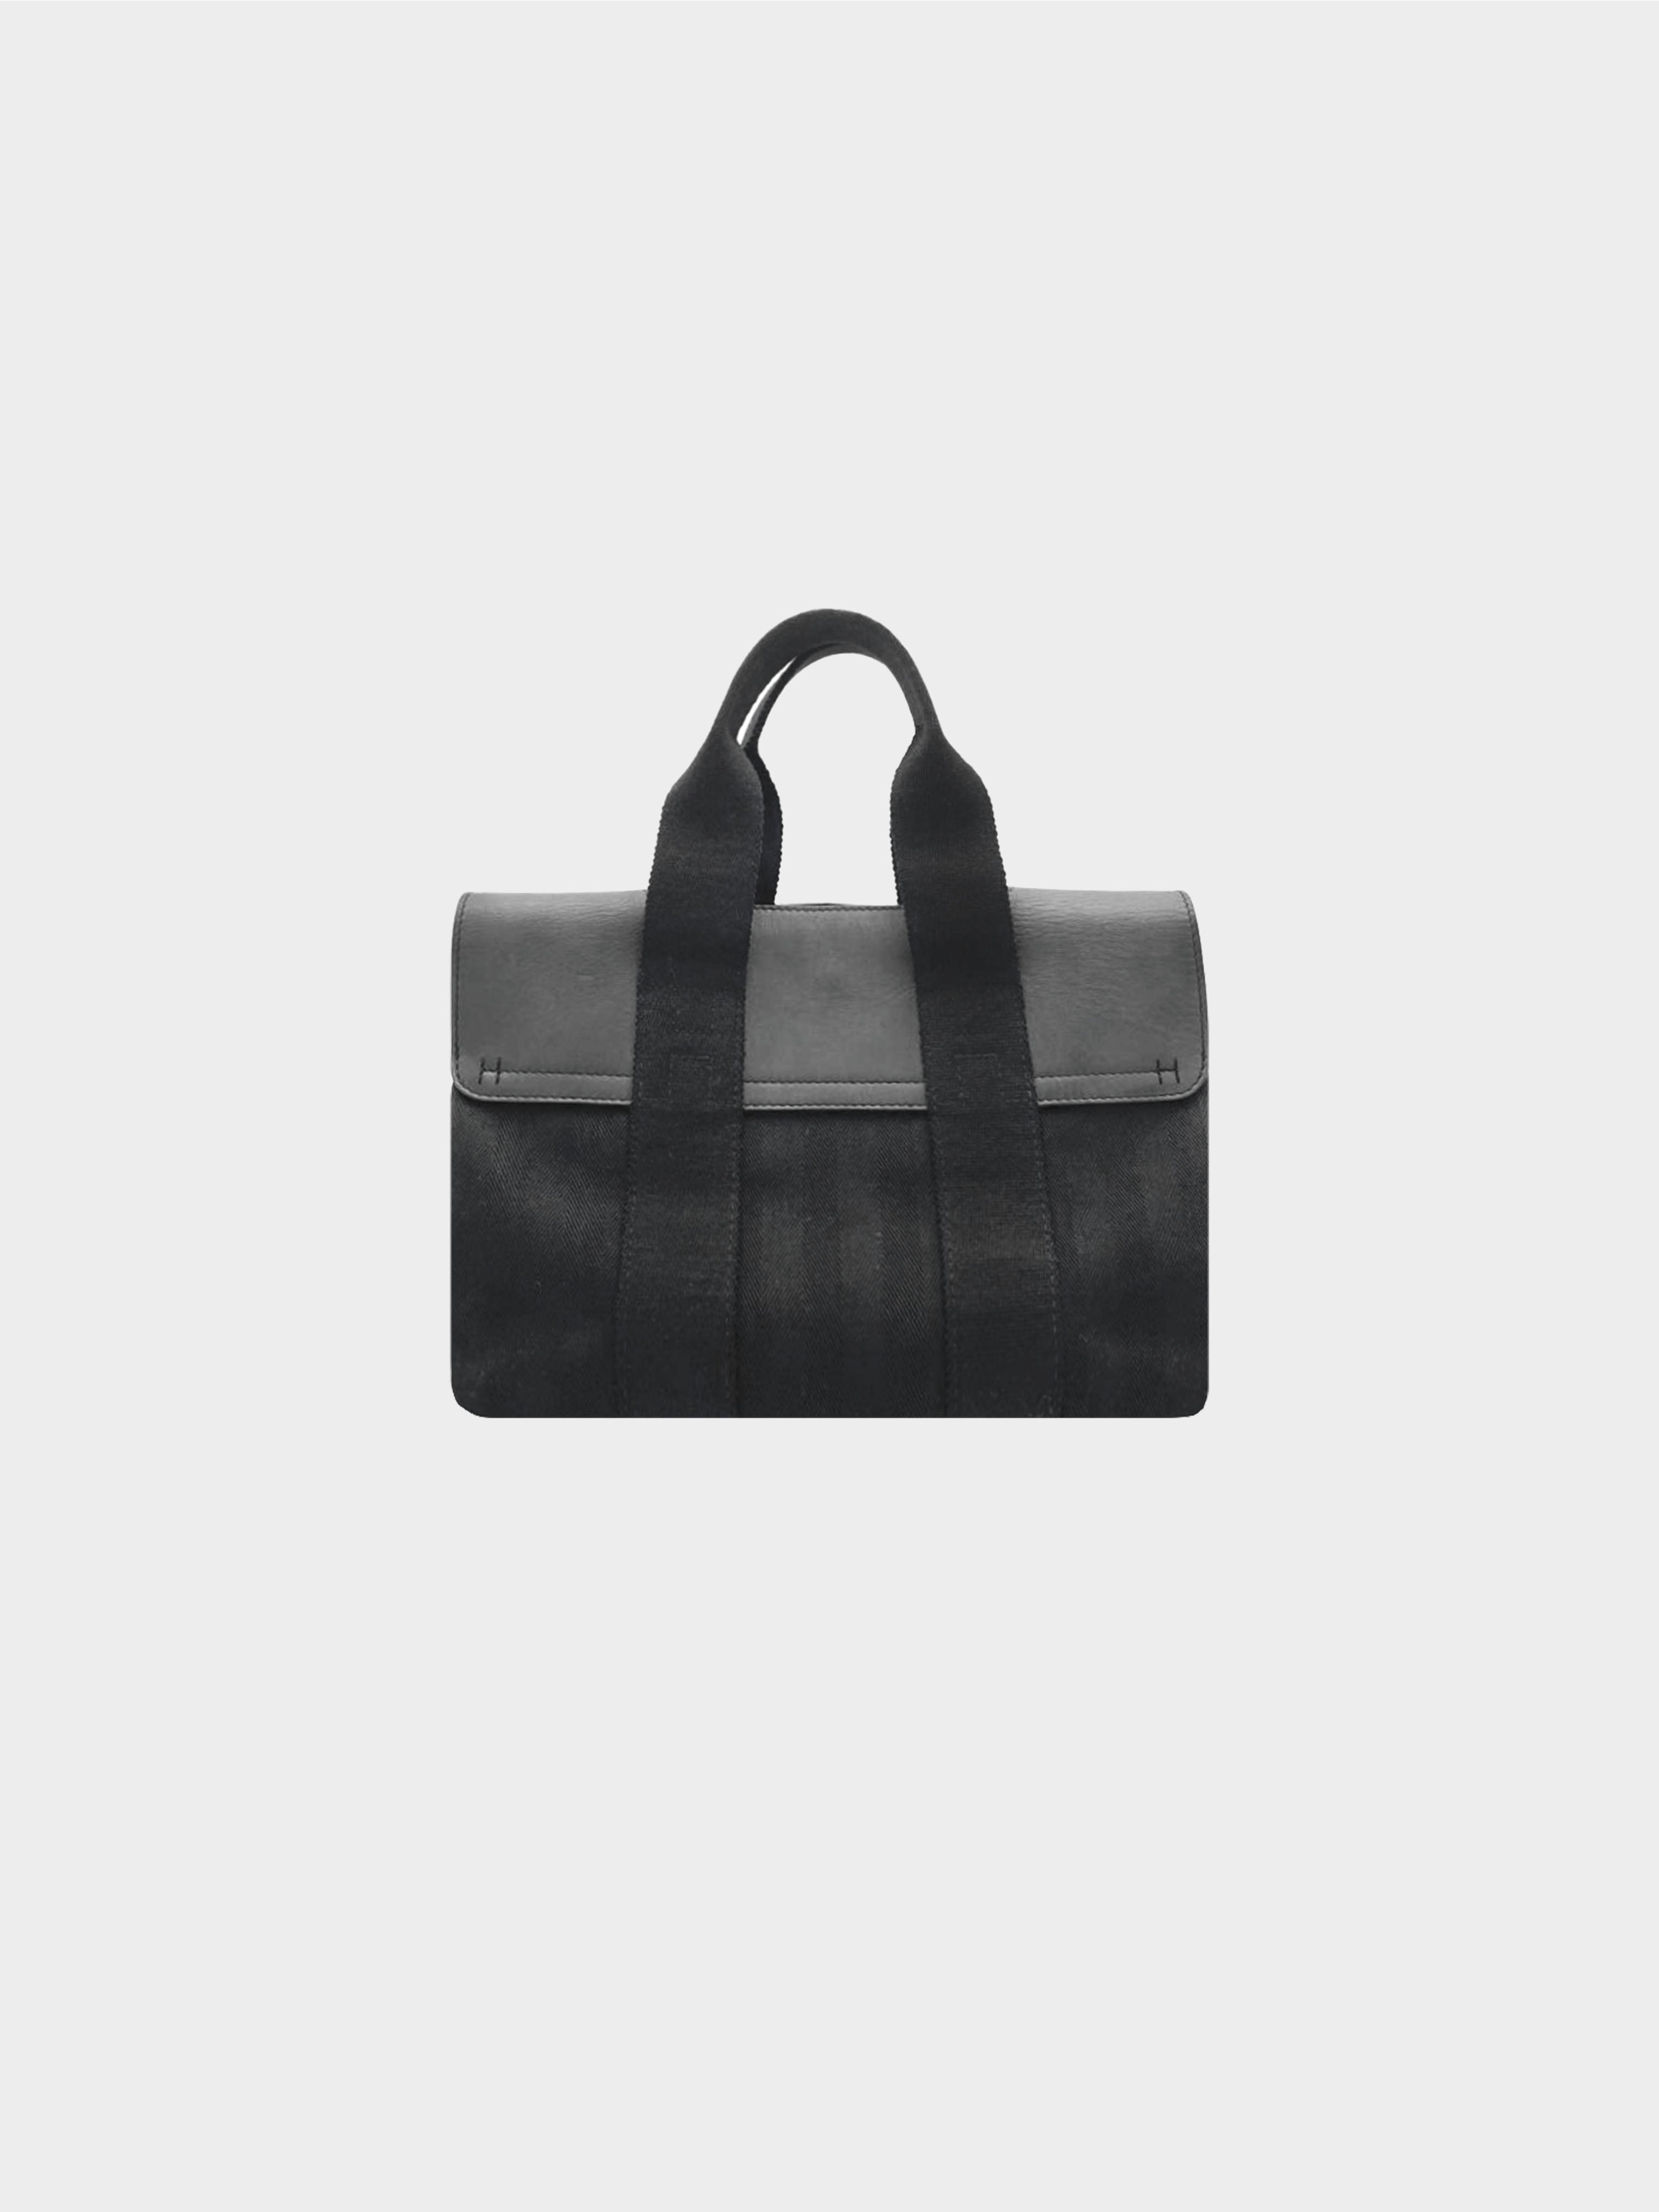 Buy [Bag] HERMES Hermes Valparaiso PM Valparaiso PM Handbag Tote